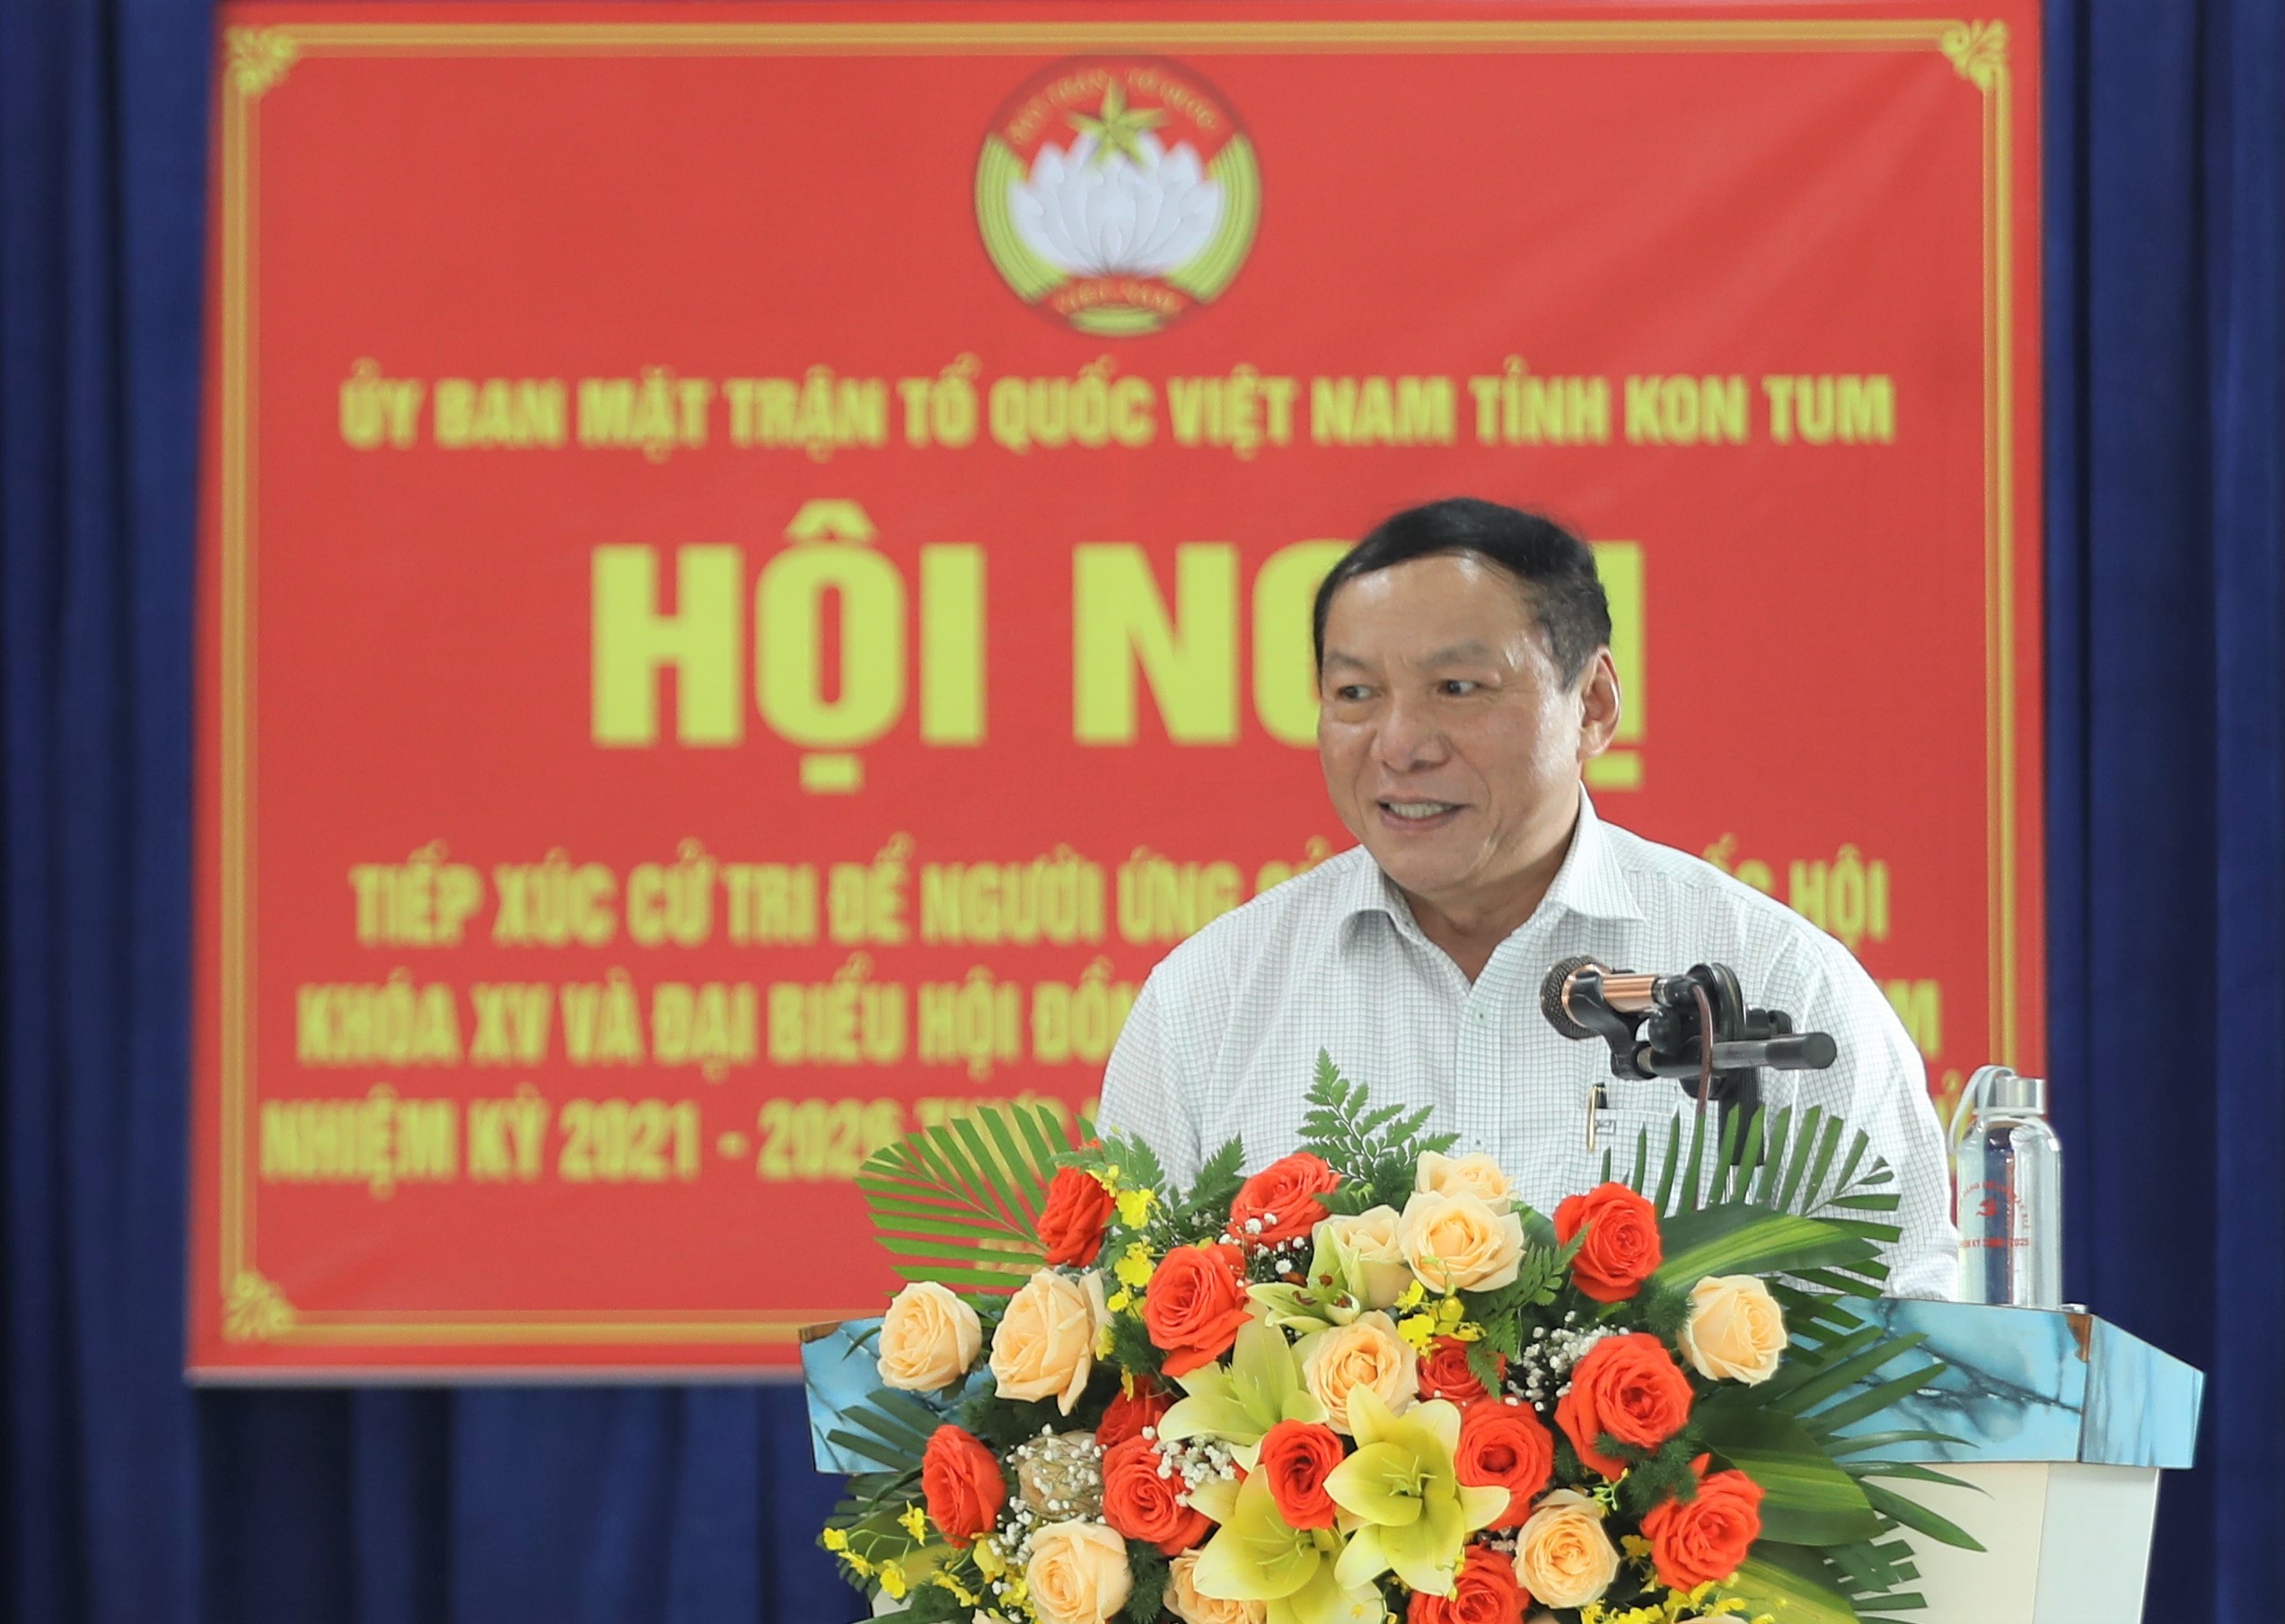 Bộ trưởng Nguyễn Văn Hùng: “Tình yêu làm đất lạ hóa quê hương”